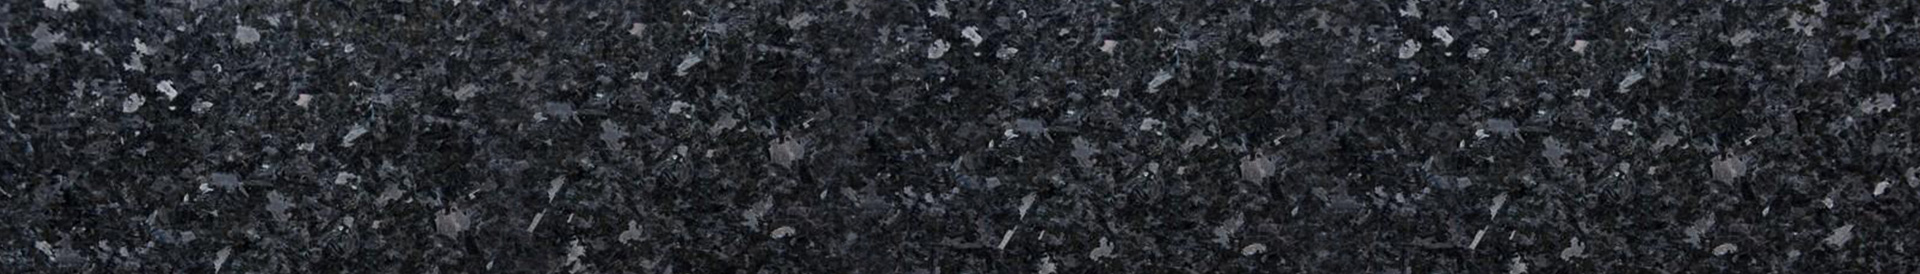 granit Angola black